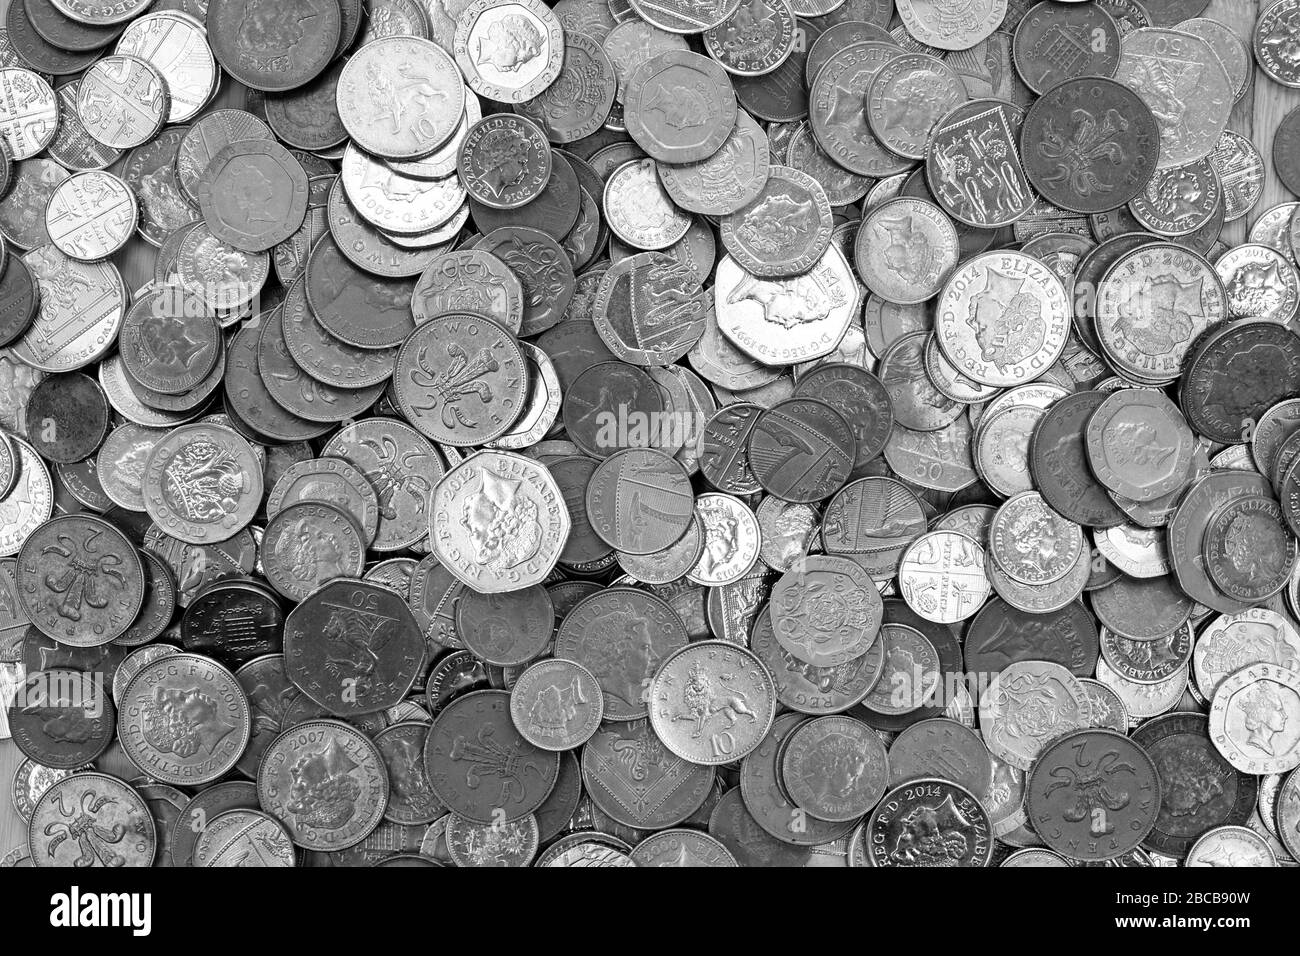 Britische Währung, Hunderte von britischen Kupfer- und silberfarbenen Münzen stapelten sich zufällig übereinander, eine Pfund-Münzen, fünfzig Pence, zwanzig Pence, zwei Pence Stockfoto